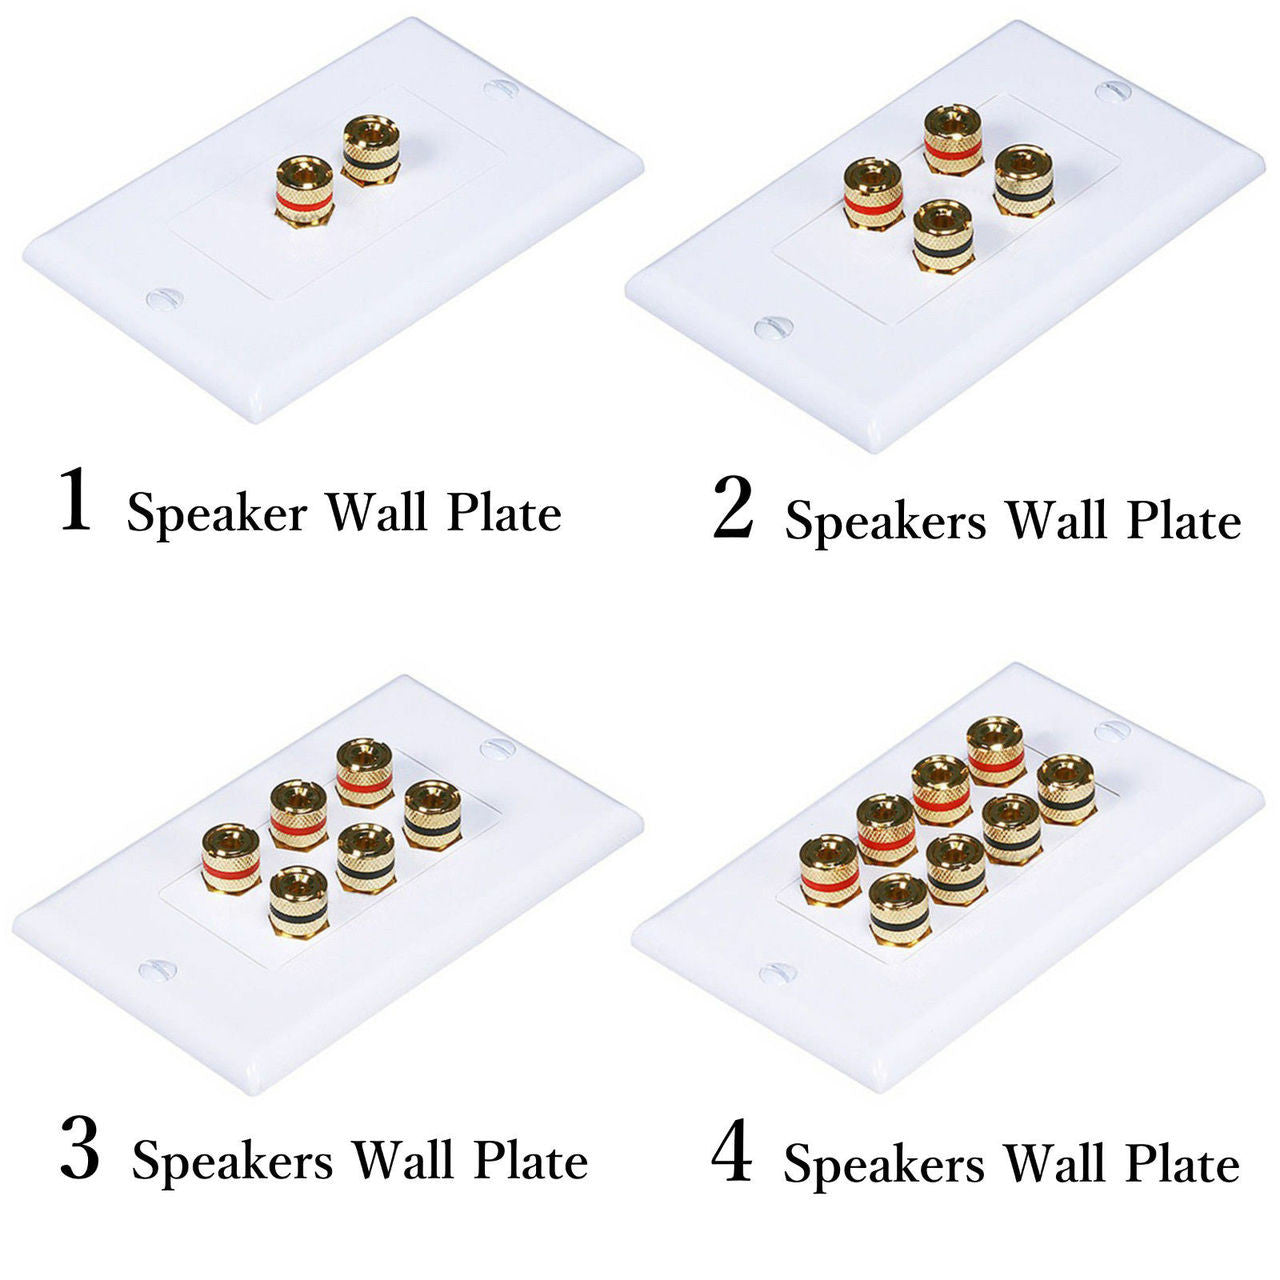 Speaker Wall Plate